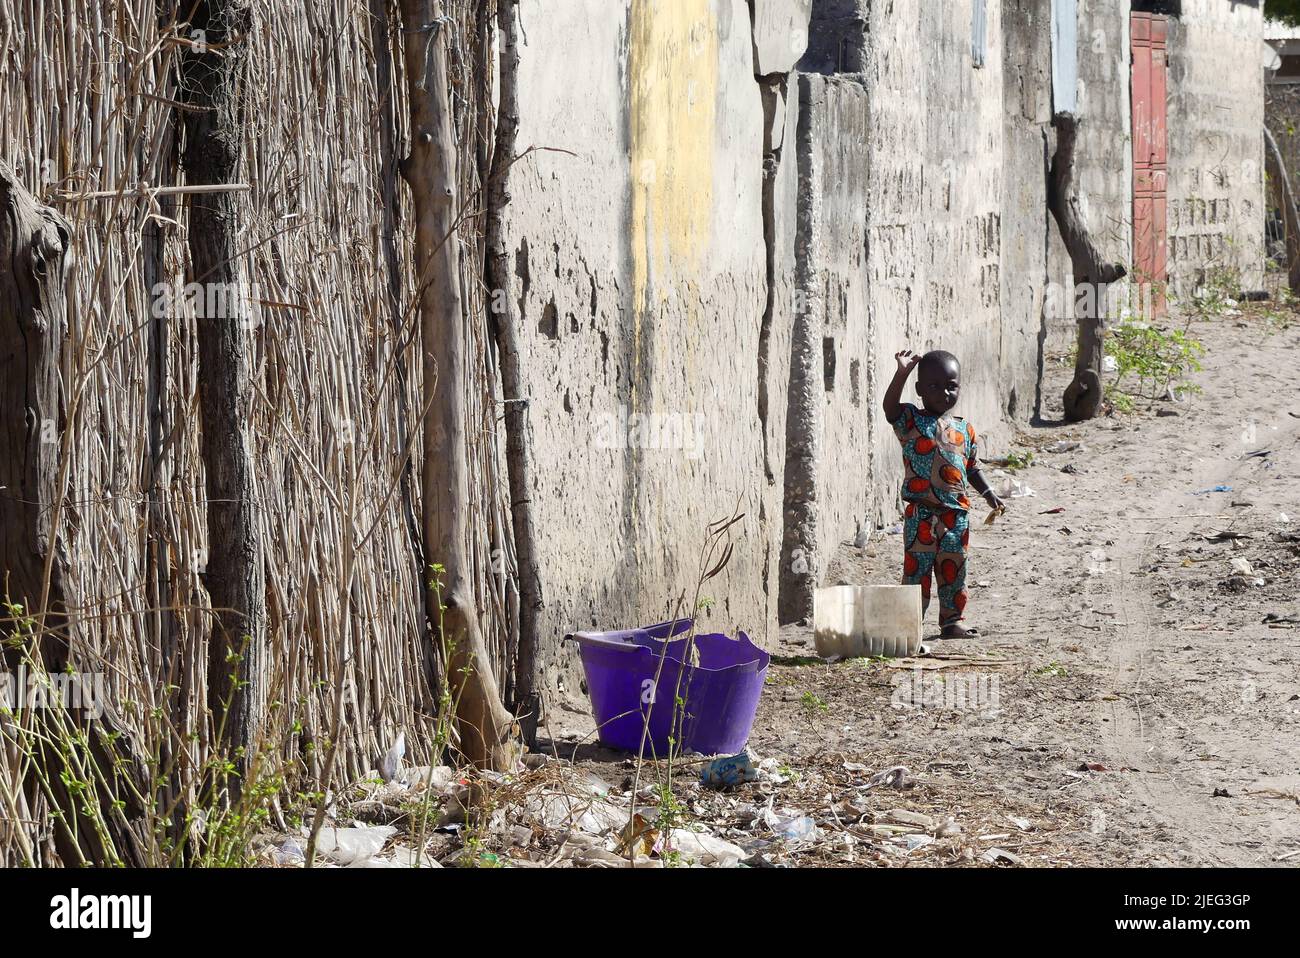 Giovane bambino nero africano, di colore nero, in un quartiere povero di Touba città, Senegal, Africa occidentale Foto Stock